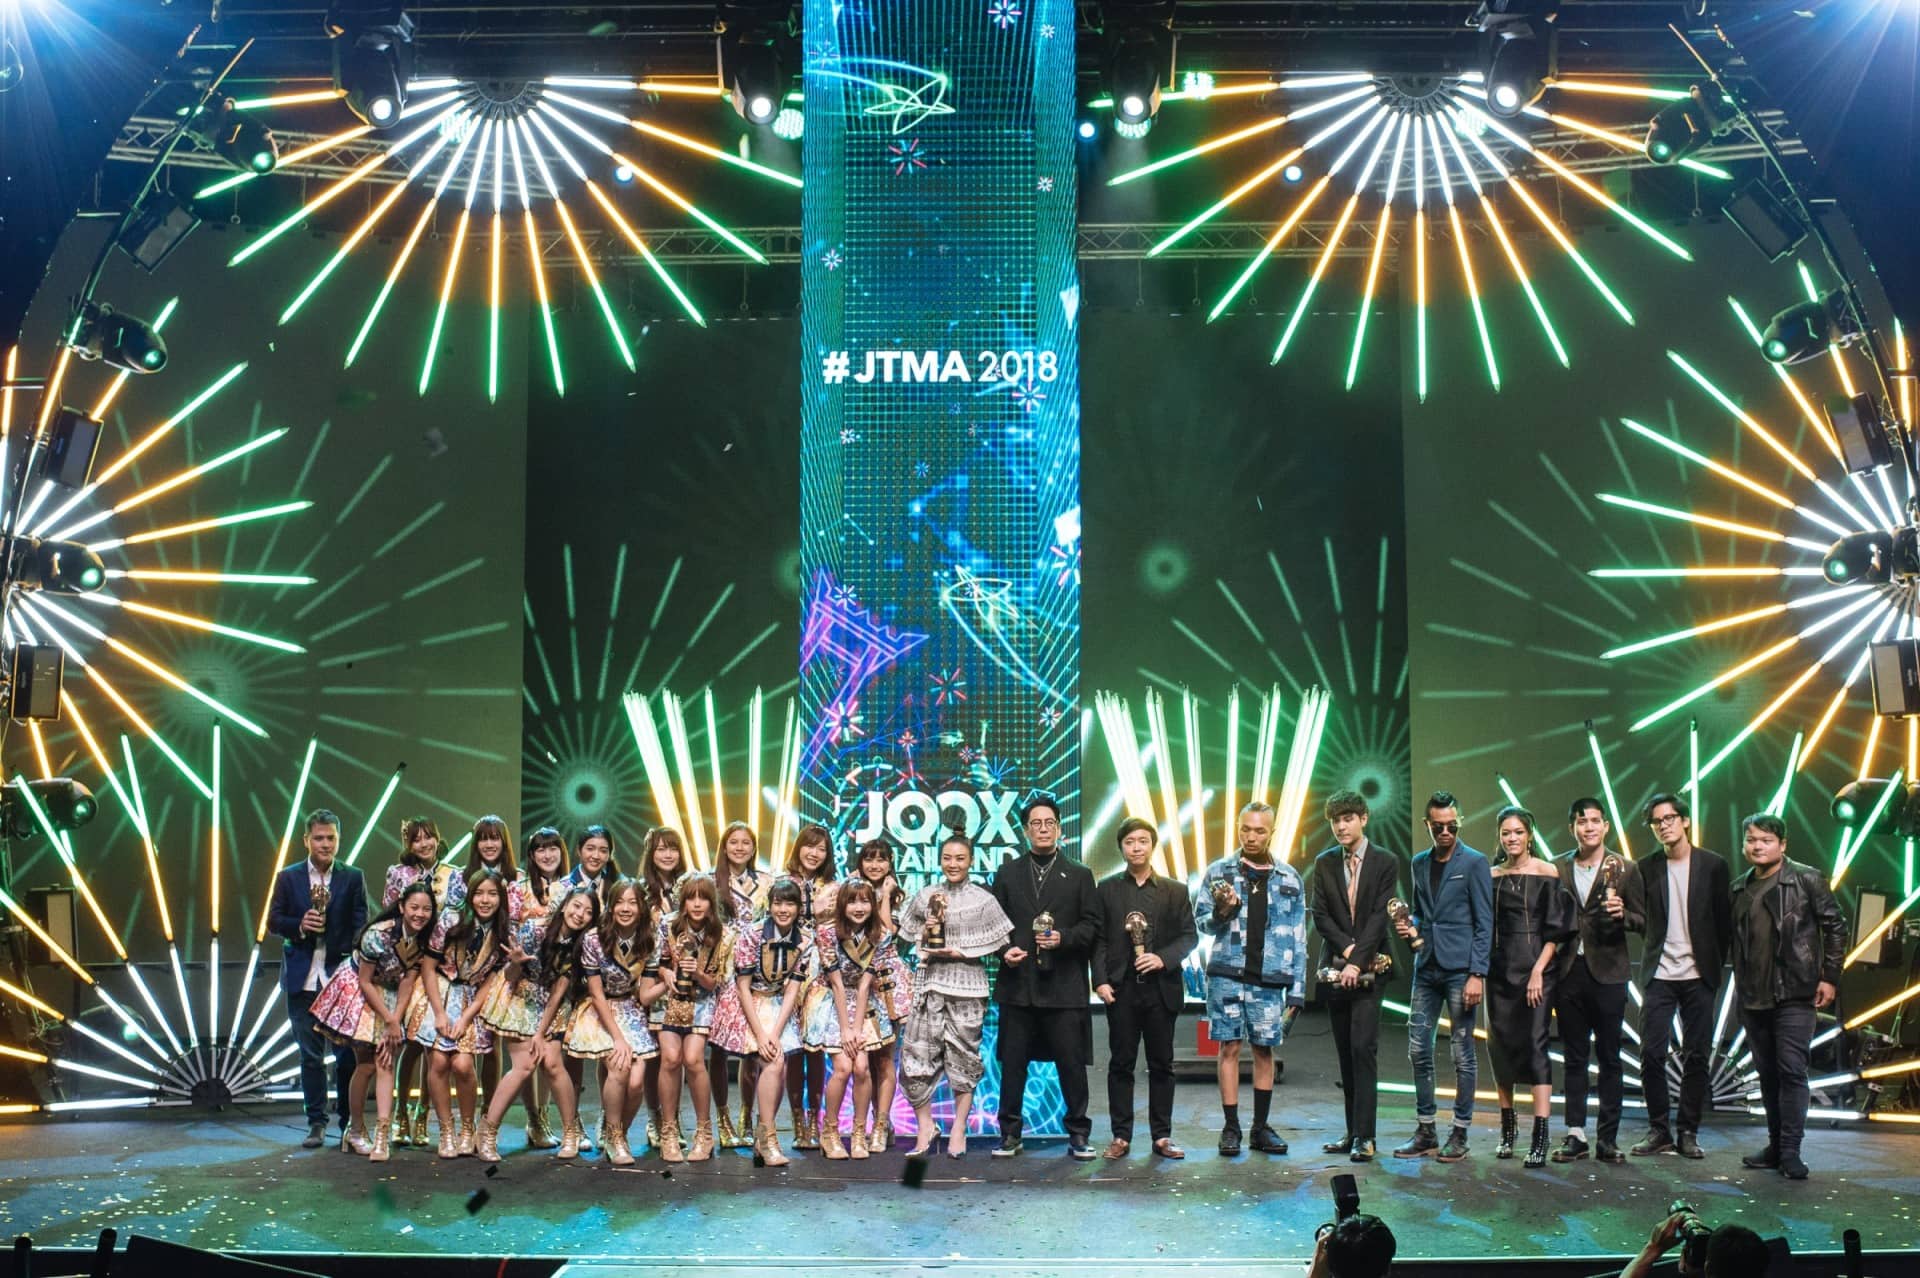 เปิดเส้นทาง JOOX กับภารกิจขับเคลื่อนอุตสาหกรรมเพลงไทย ชู JOOX Thailand Music Awards